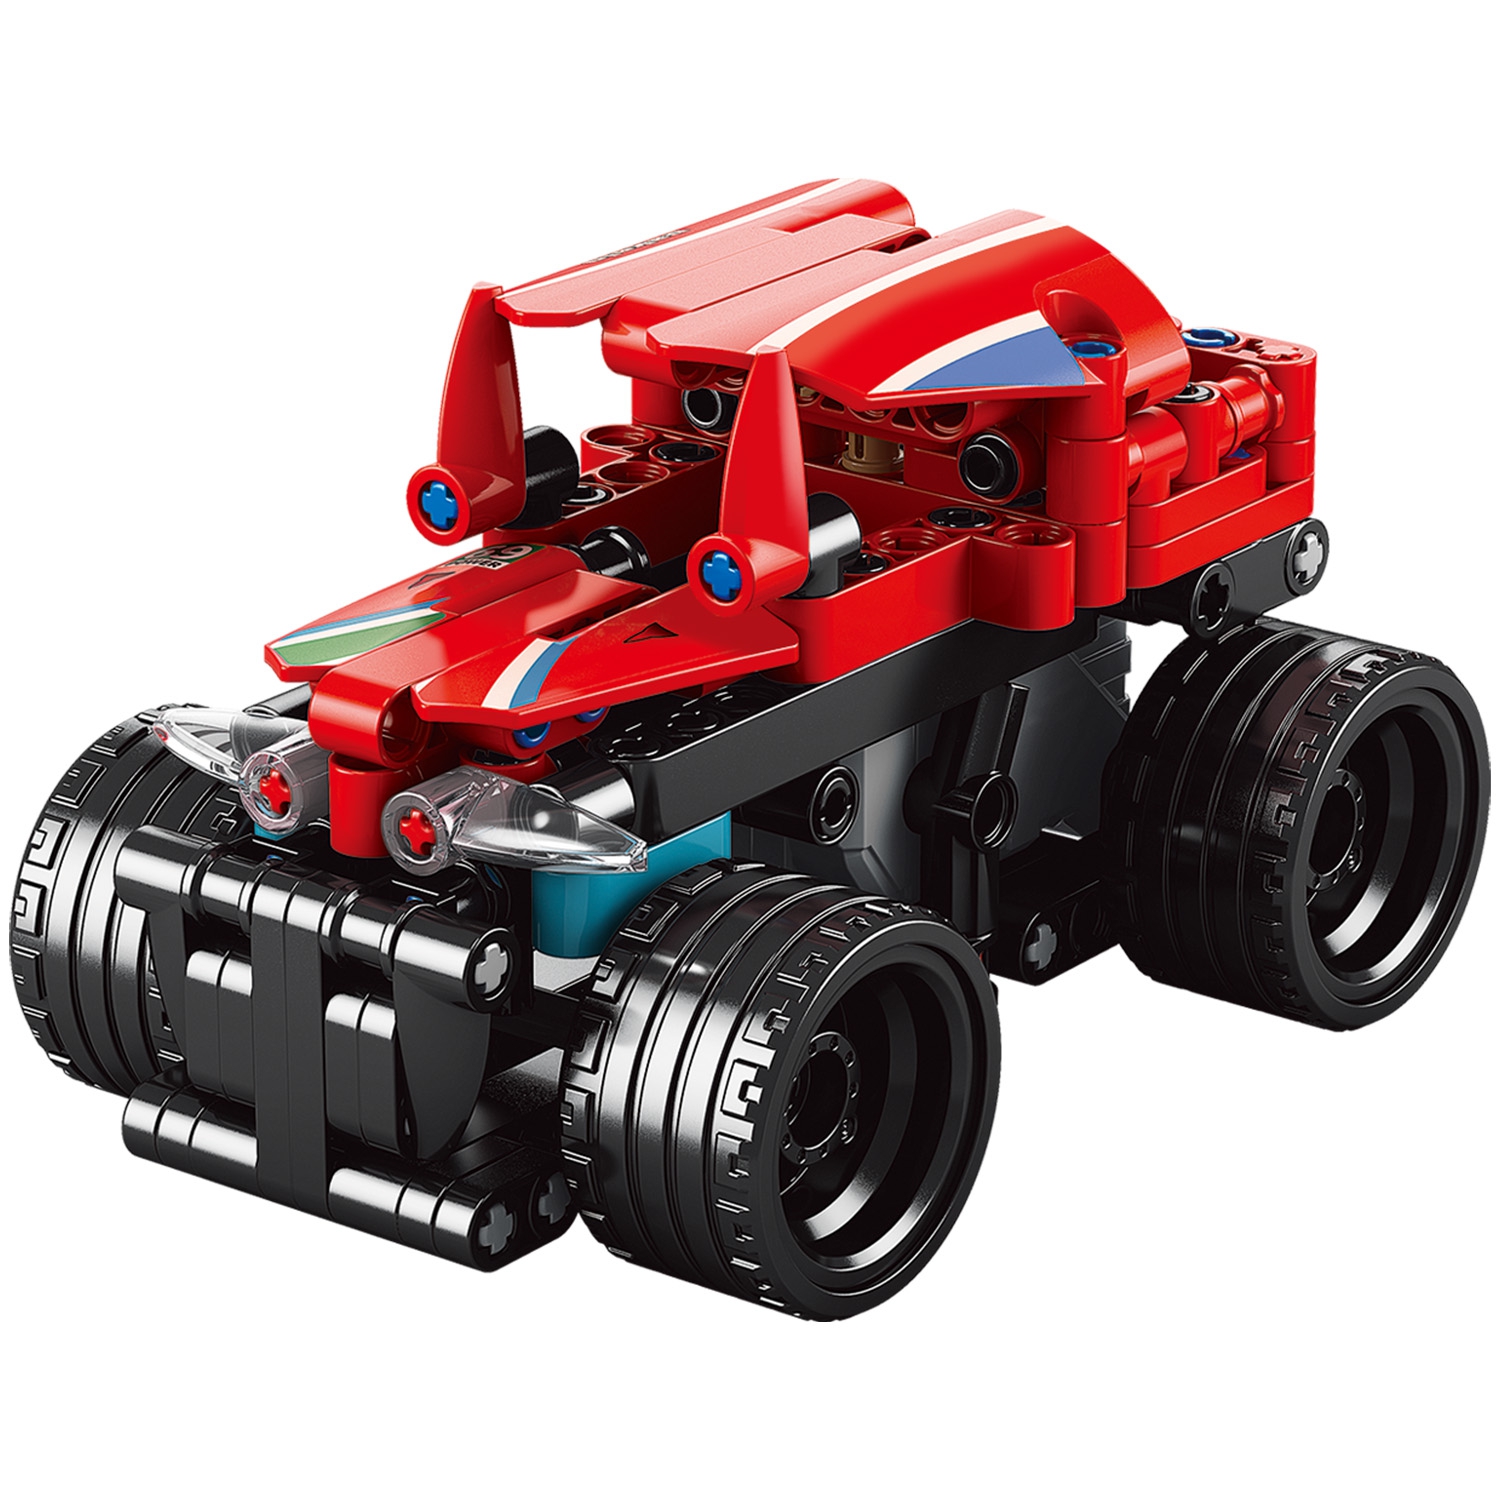 Конструктор Mioshi Tech Пуллбэк 2 в 1: Красный автомобиль (215 дет., 18 см, пружин. механизм) (Вид 1)